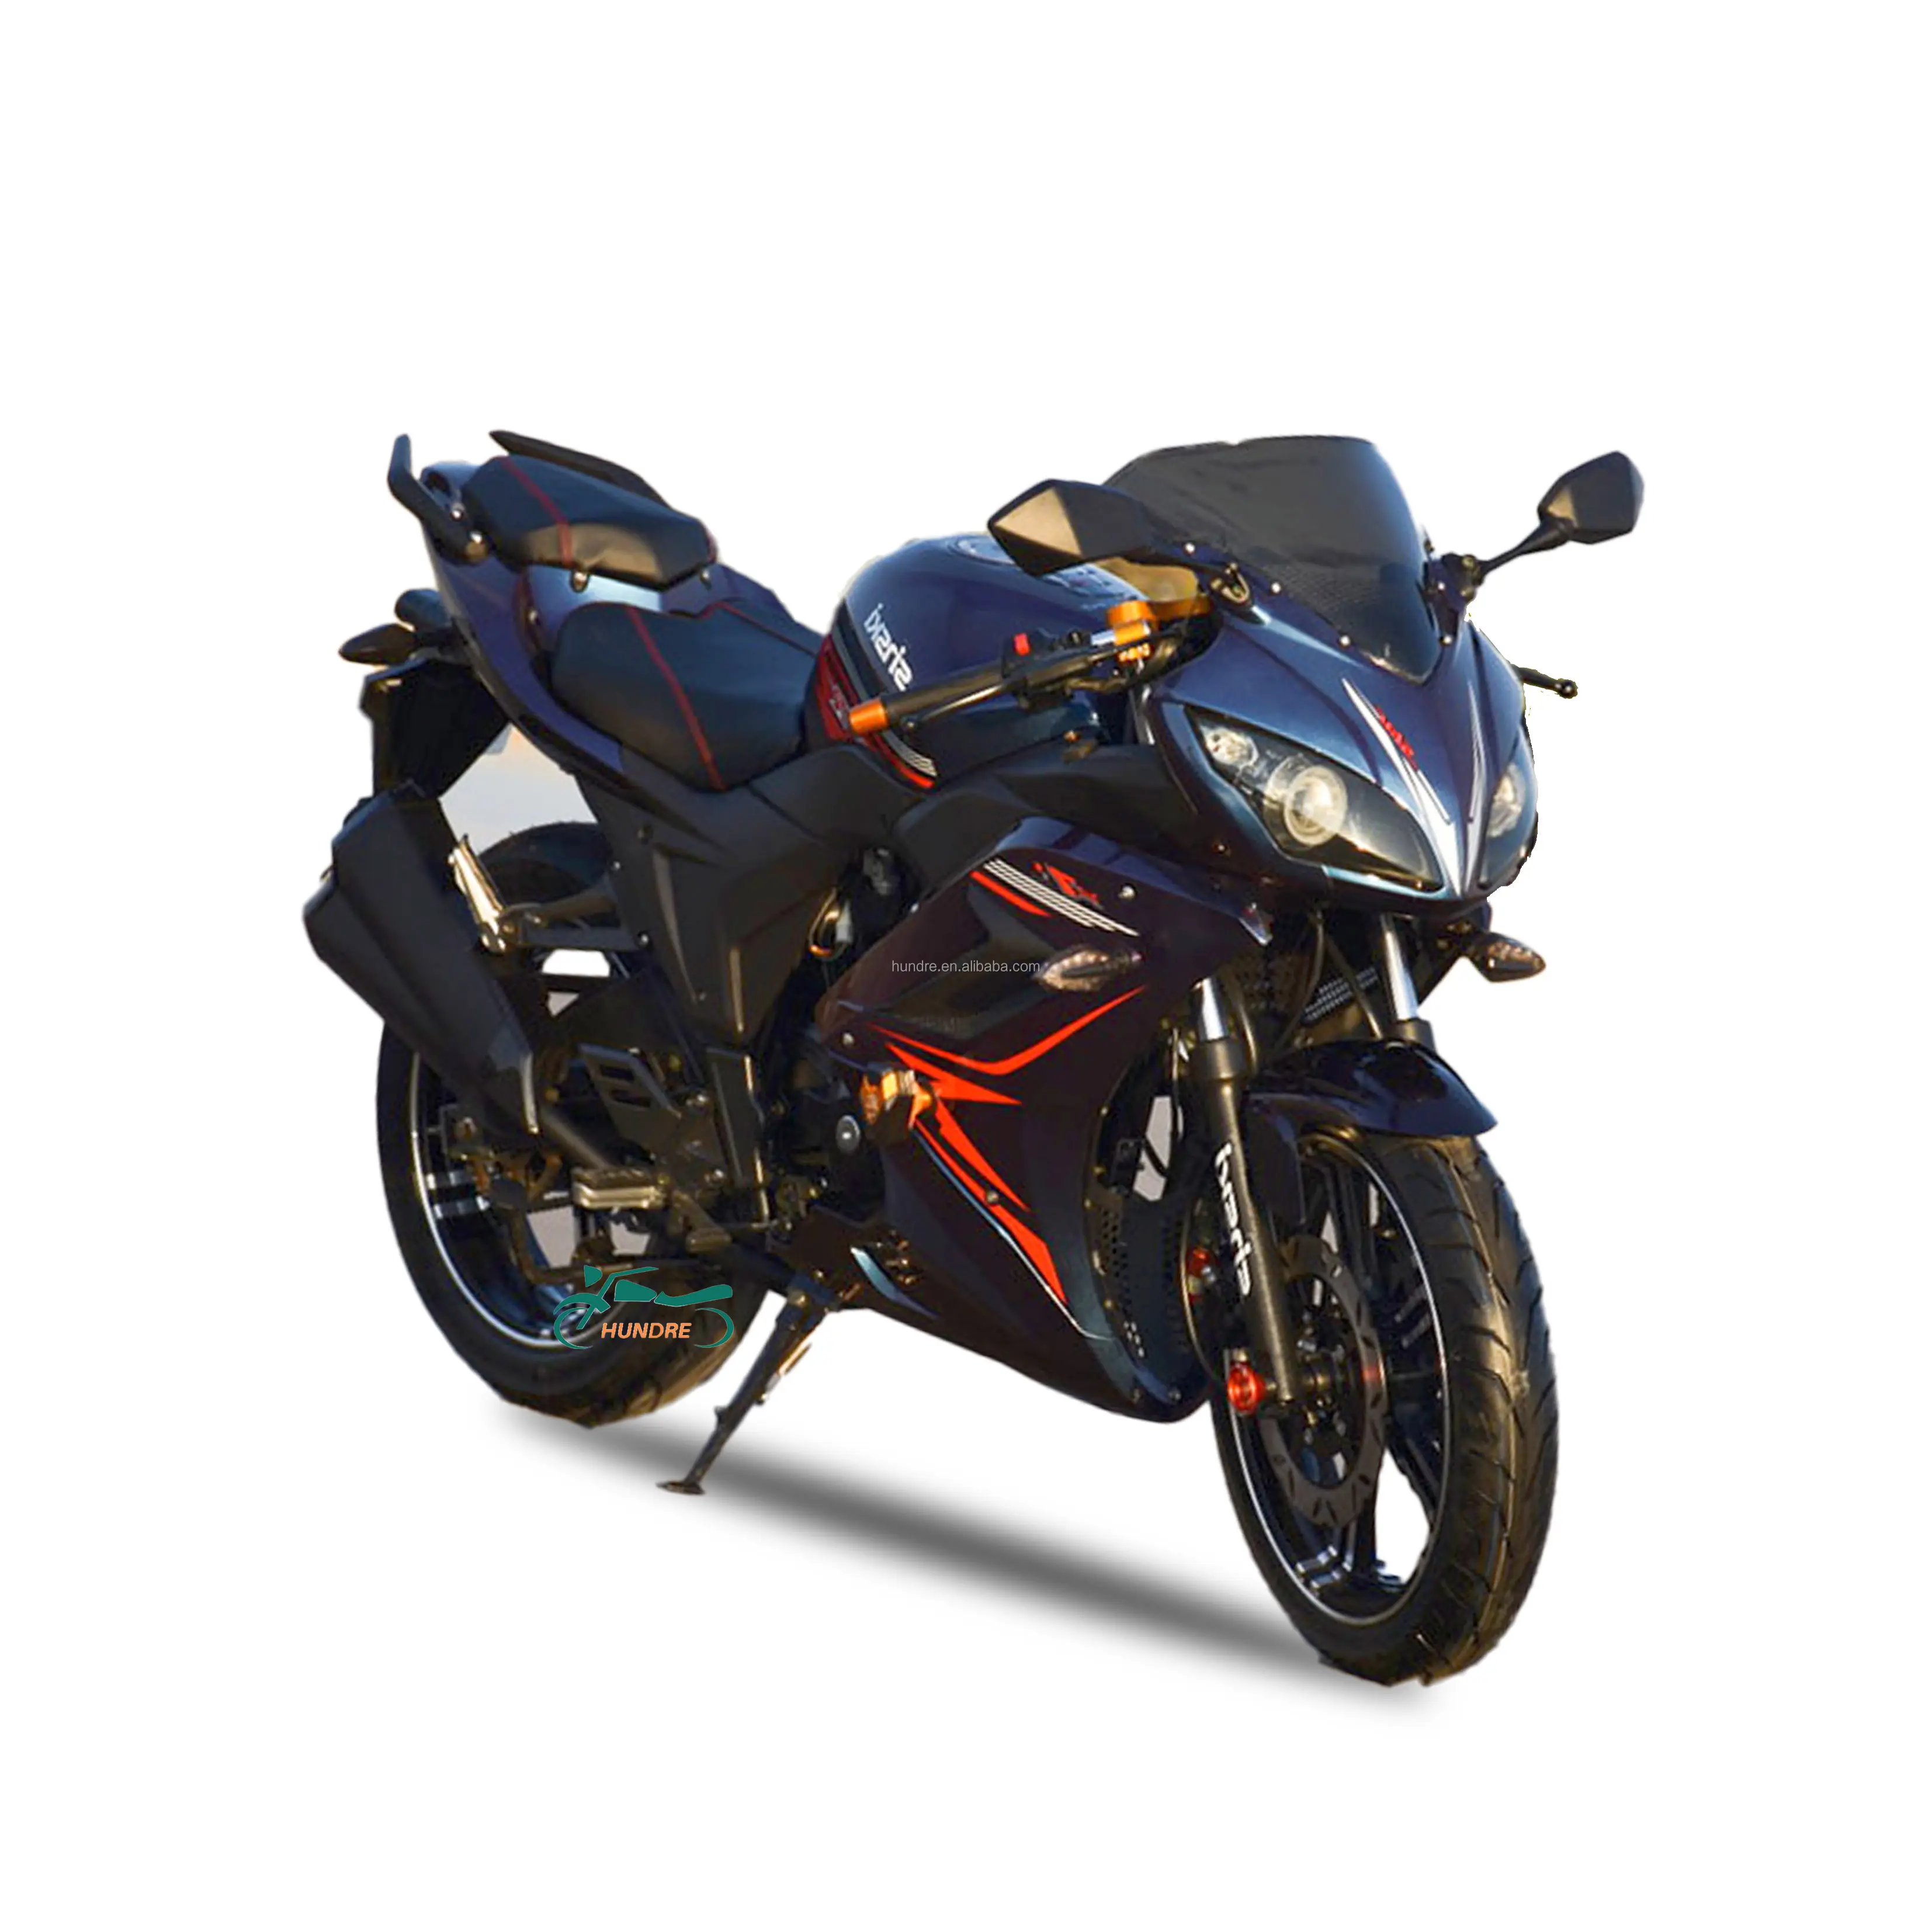 Alta velocidade gasolina gasolina esporte motocicleta 400cc duas rodas corridas cidade estrada motor bike